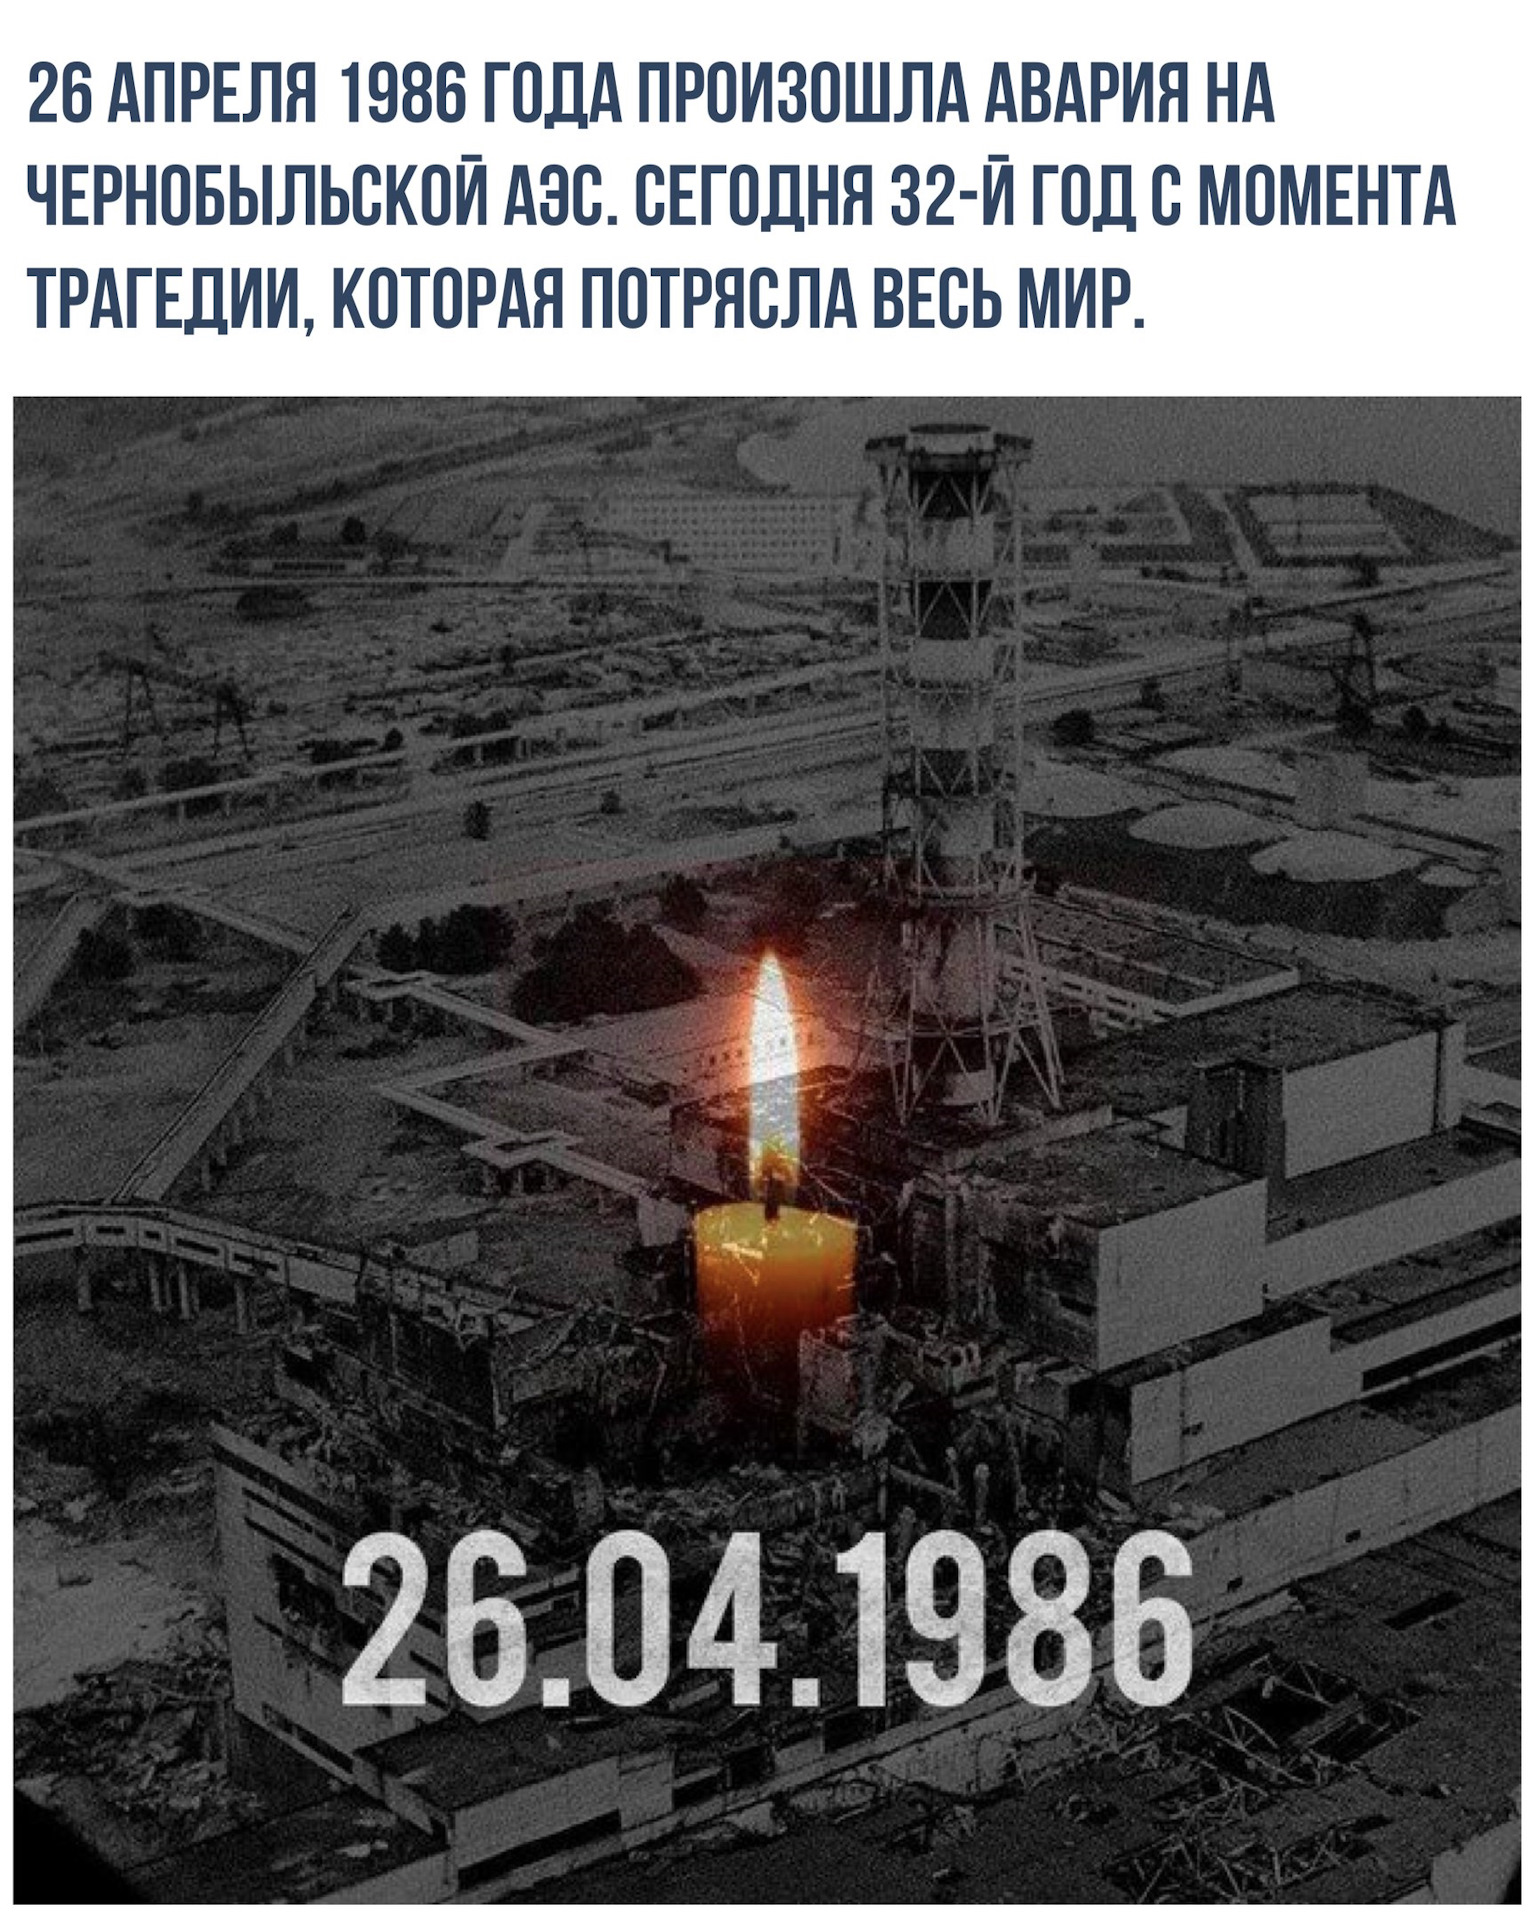 Годовщина чернобыльской аэс. Чернобыль 26 апреля 1986. Катастрофа на Чернобыльской АЭС 26 апреля 1986 года. 26 Апреля 1986 года Чернобыльская АЭС. Чернобыль 1986 год 25 апреля.